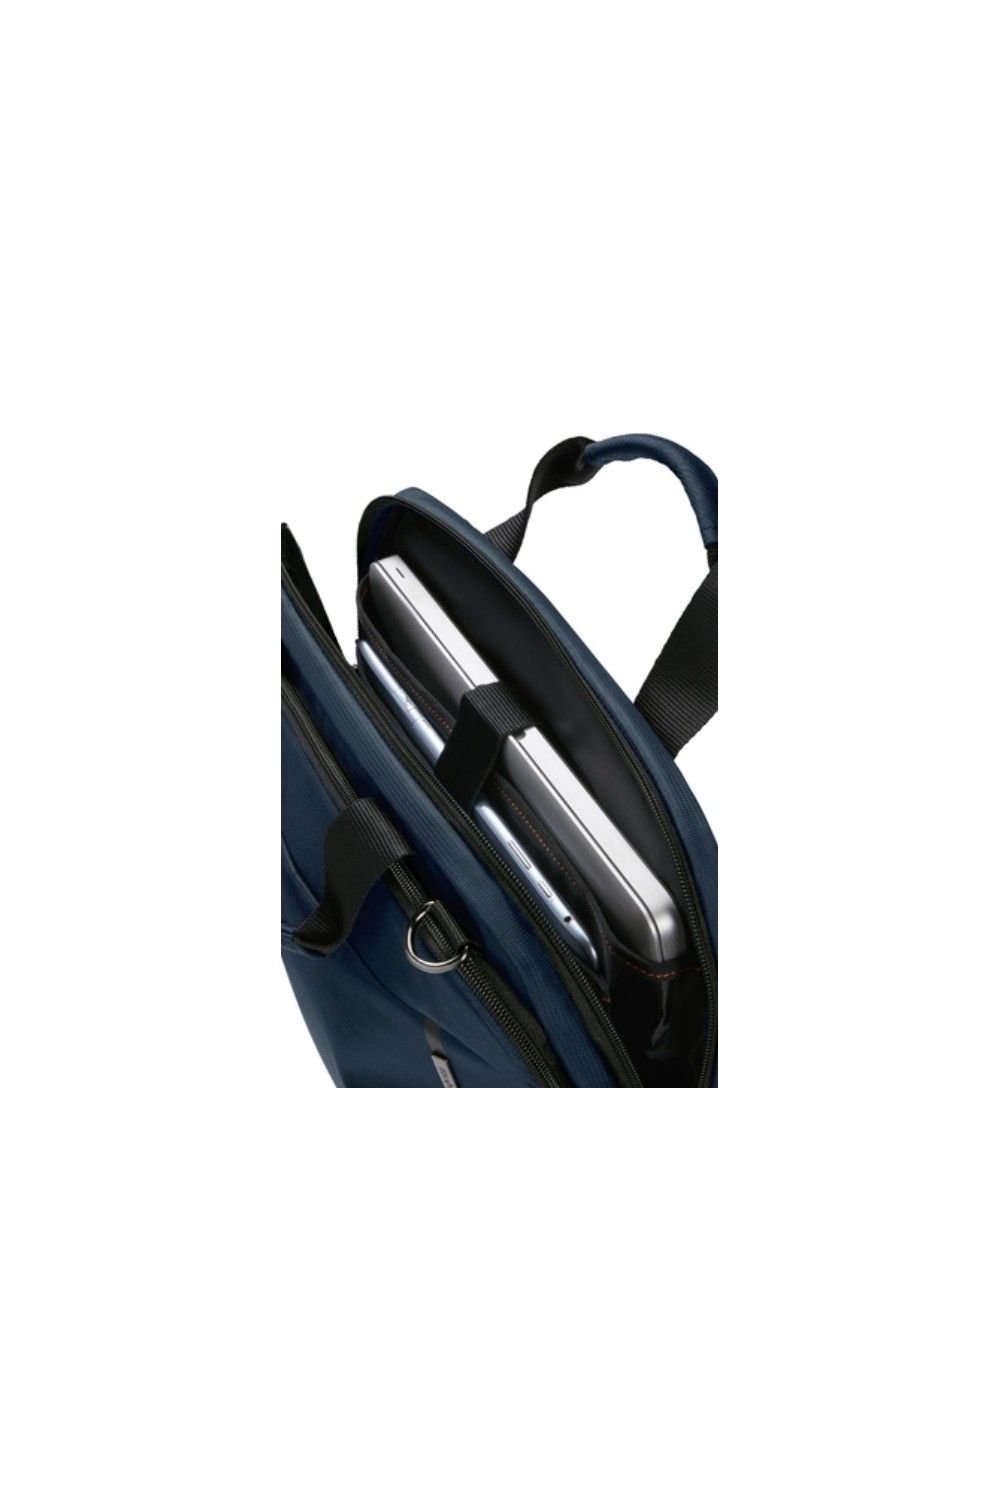 Samsonite sac d'ordinateur portable Network 4 15 pouces bleu